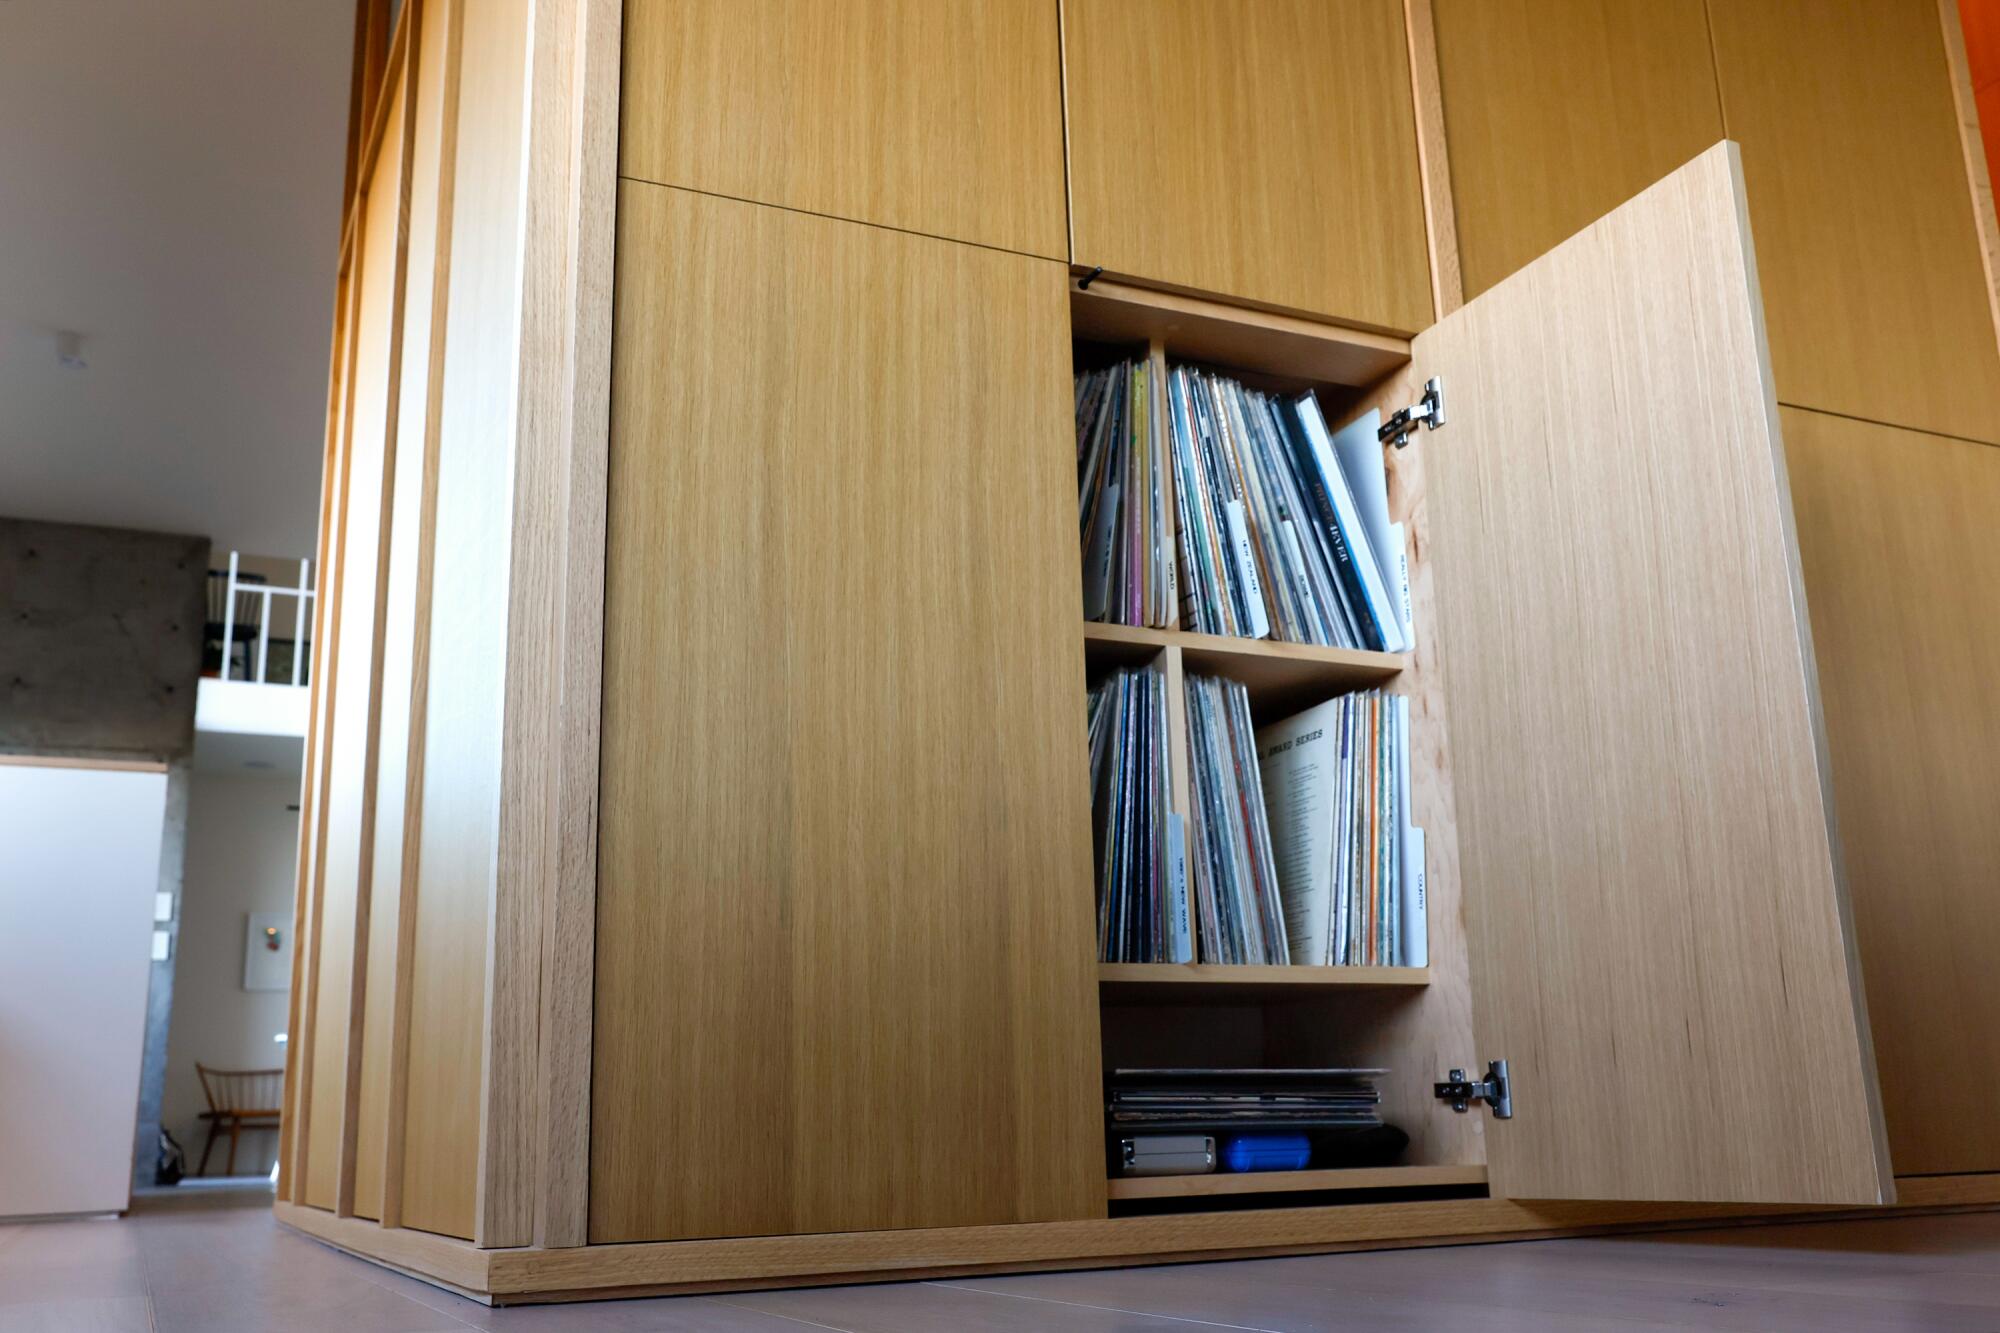 Los discos están escondidos detrás de gabinetes de madera clara que parecen escondidos en las paredes.